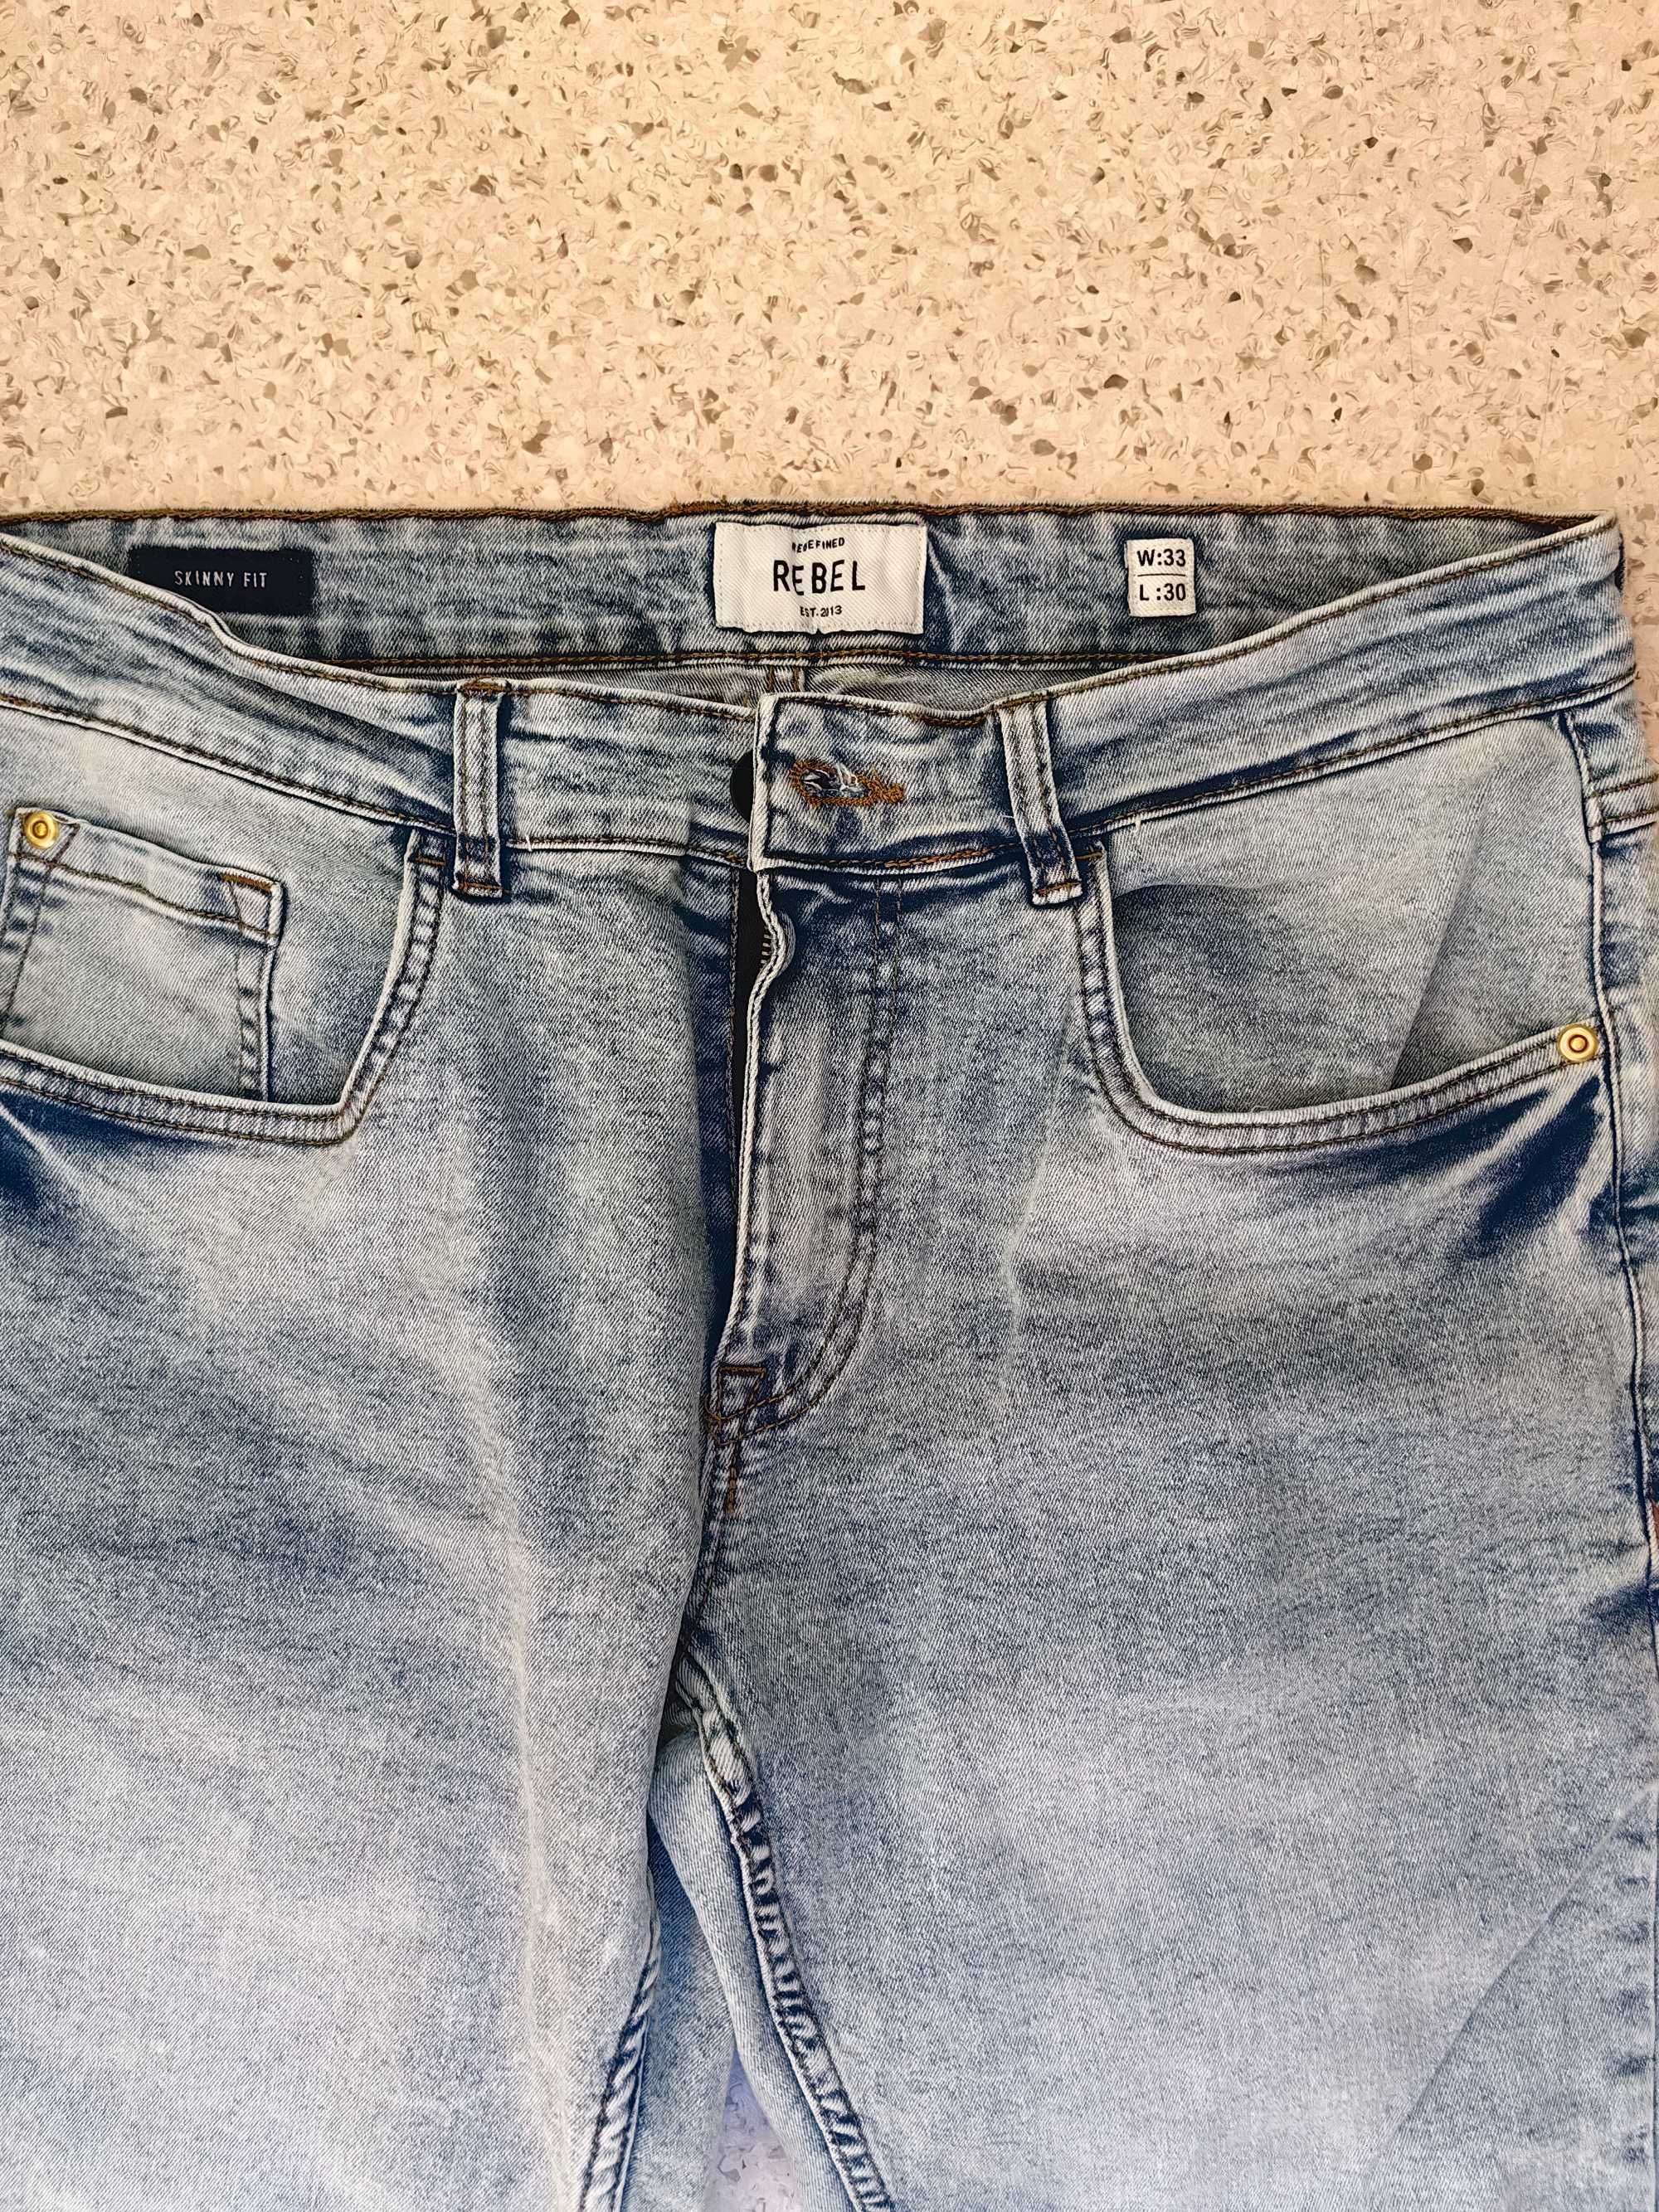 Spodnie, jeansy, Rebel, r. L, męskie